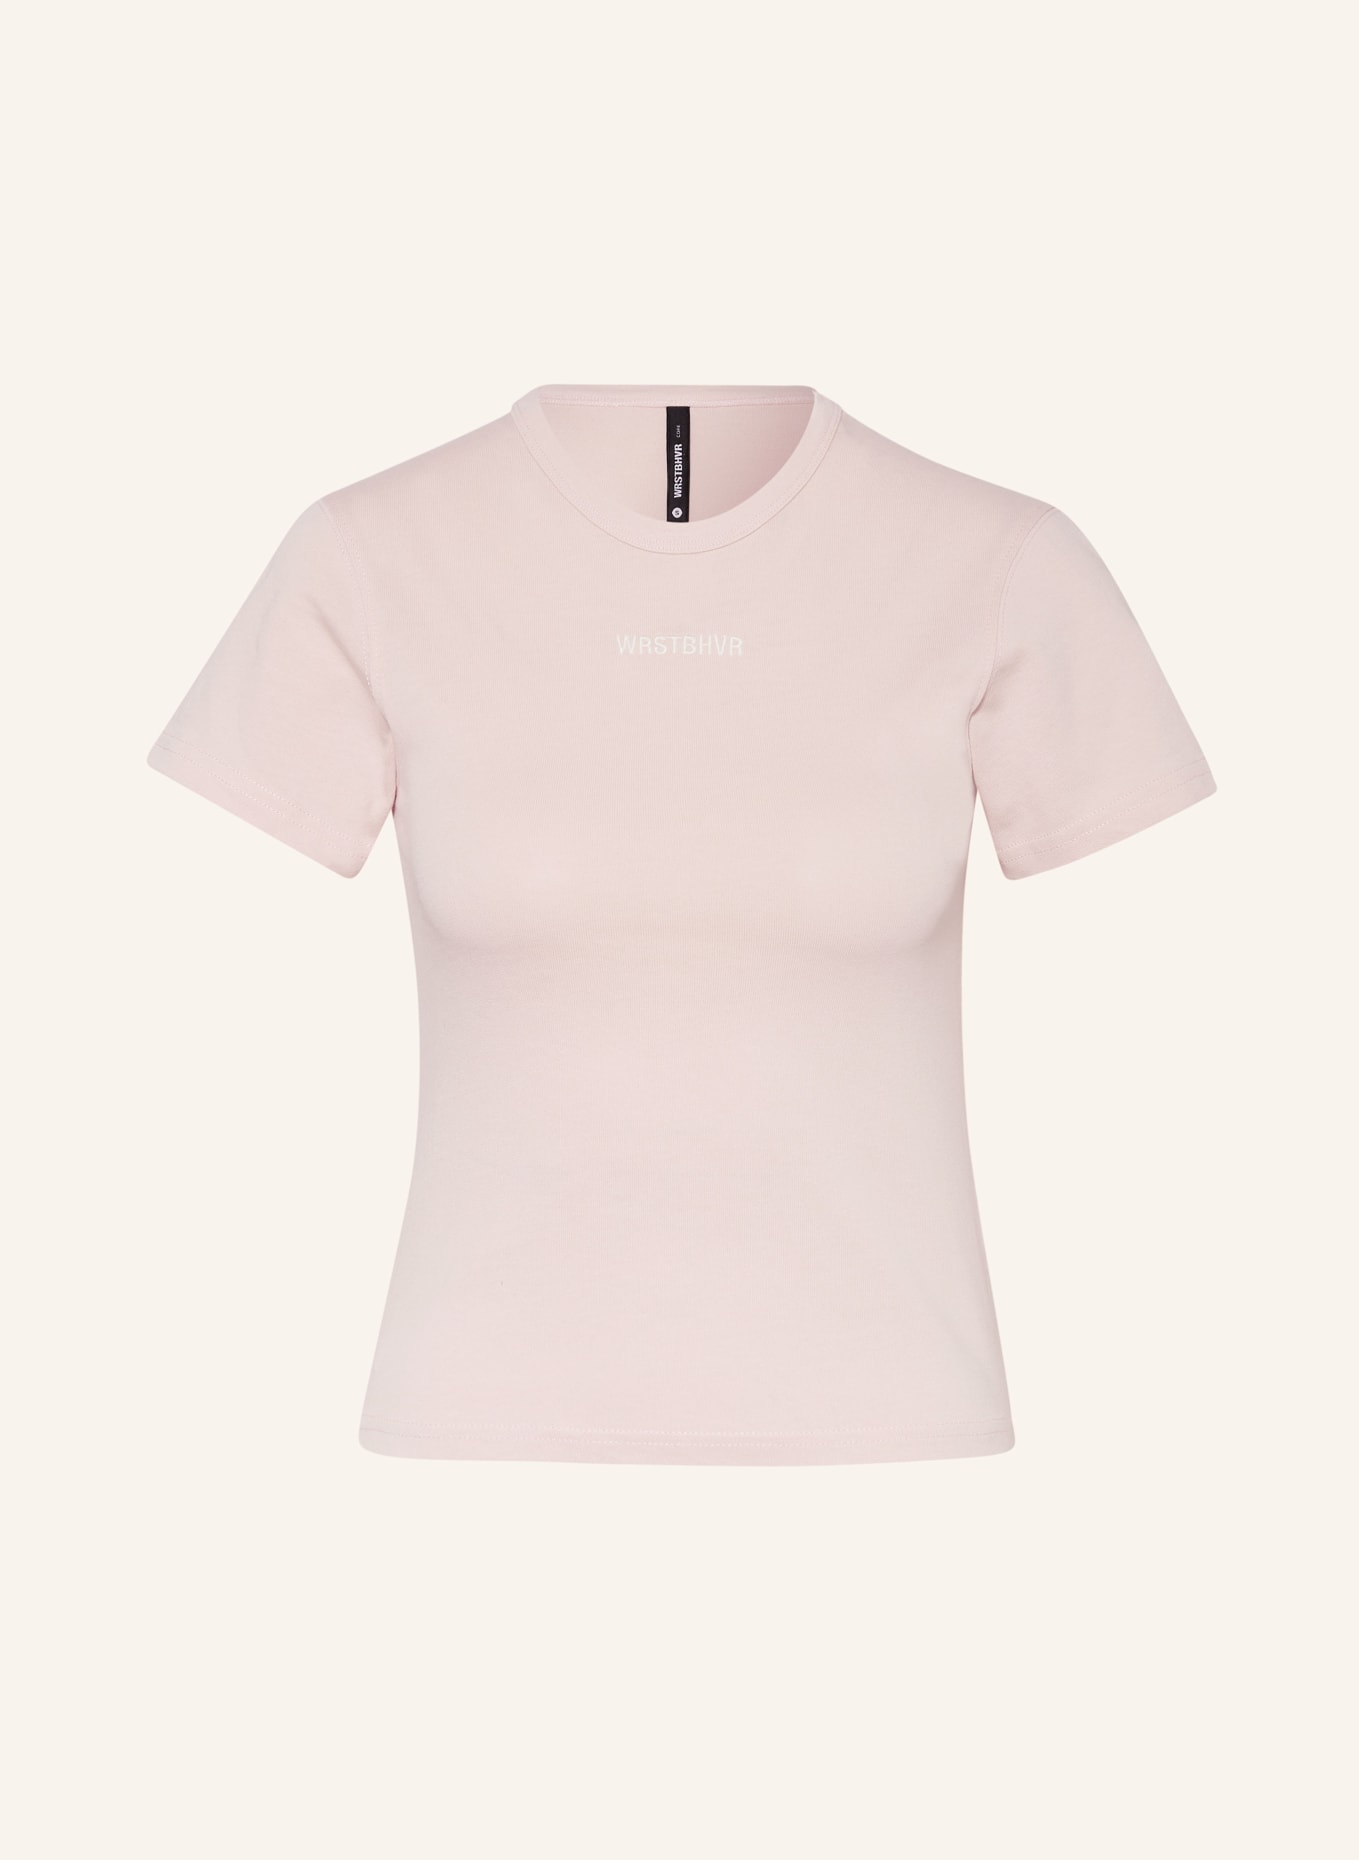 WRSTBHVR T-shirt NADI, Color: ROSE (Image 1)